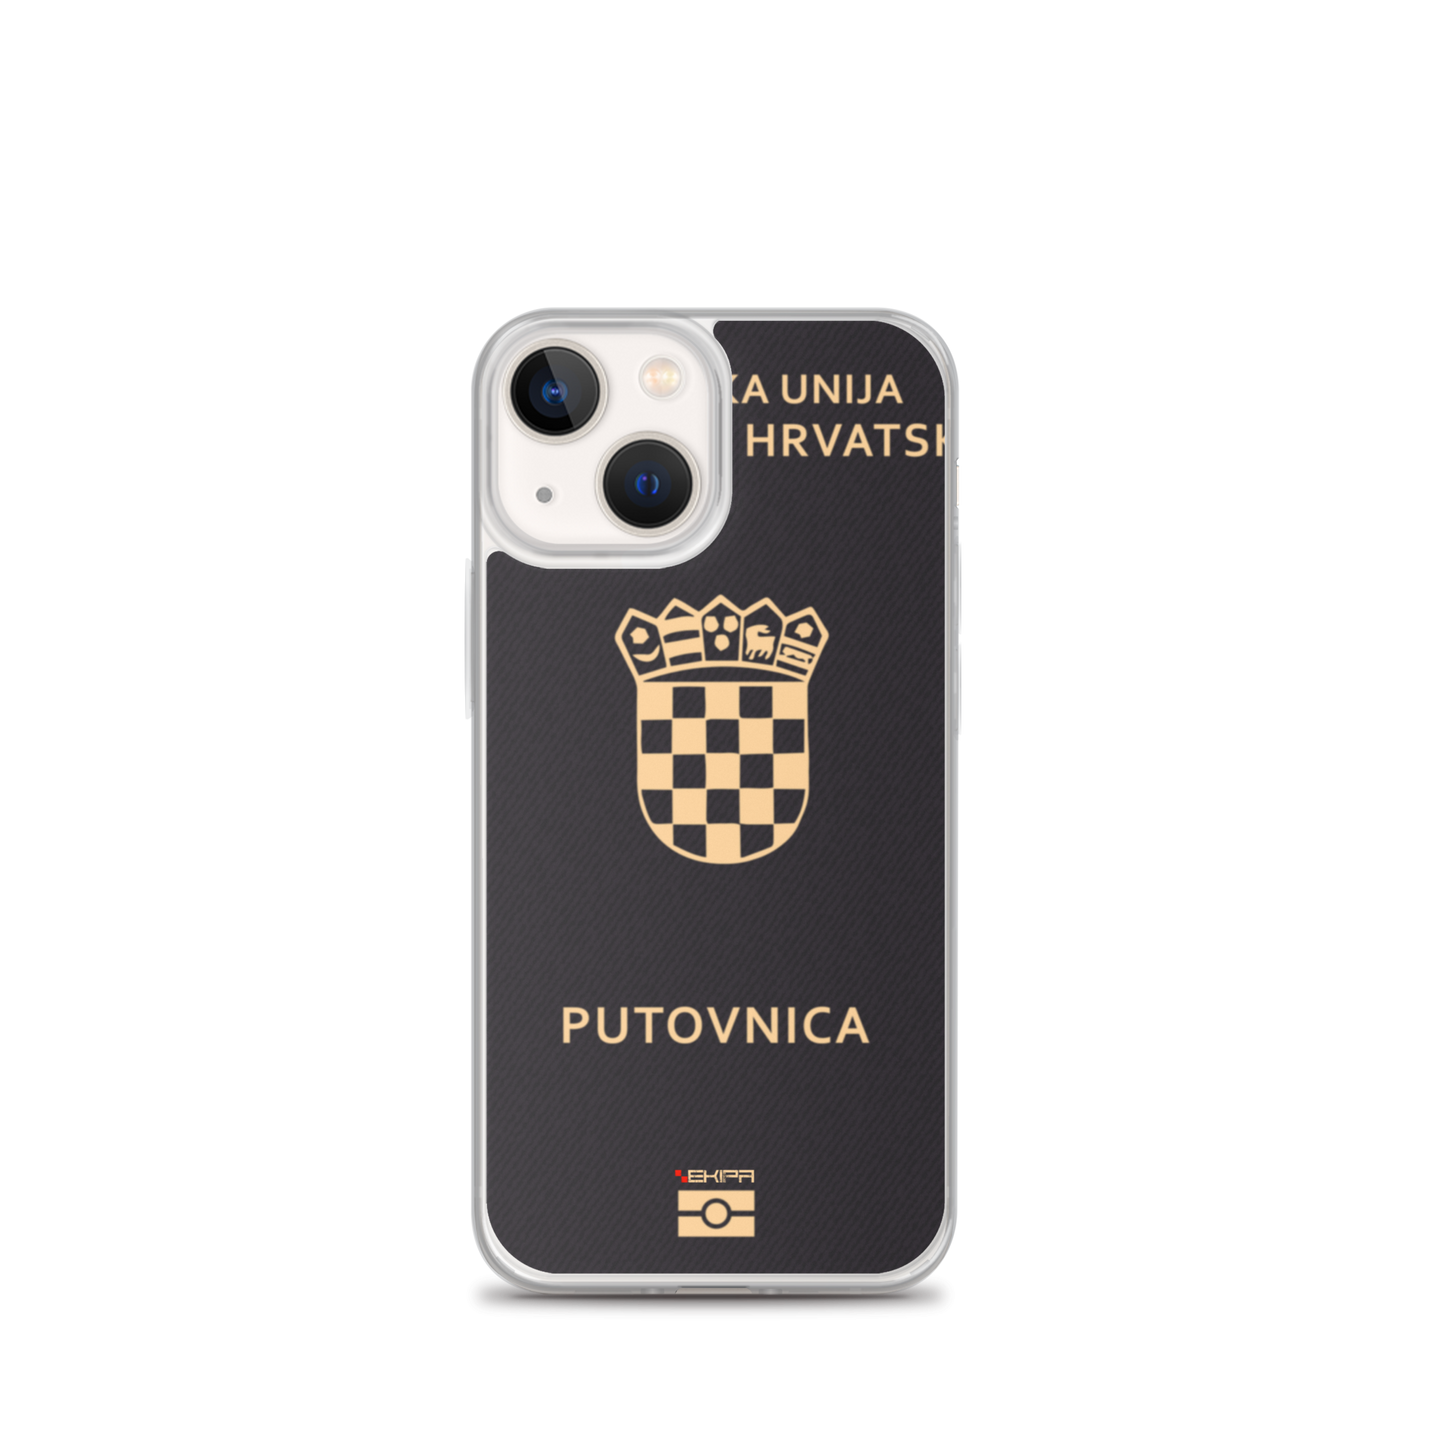 "Hrvatska Putovnica" - iPhone case